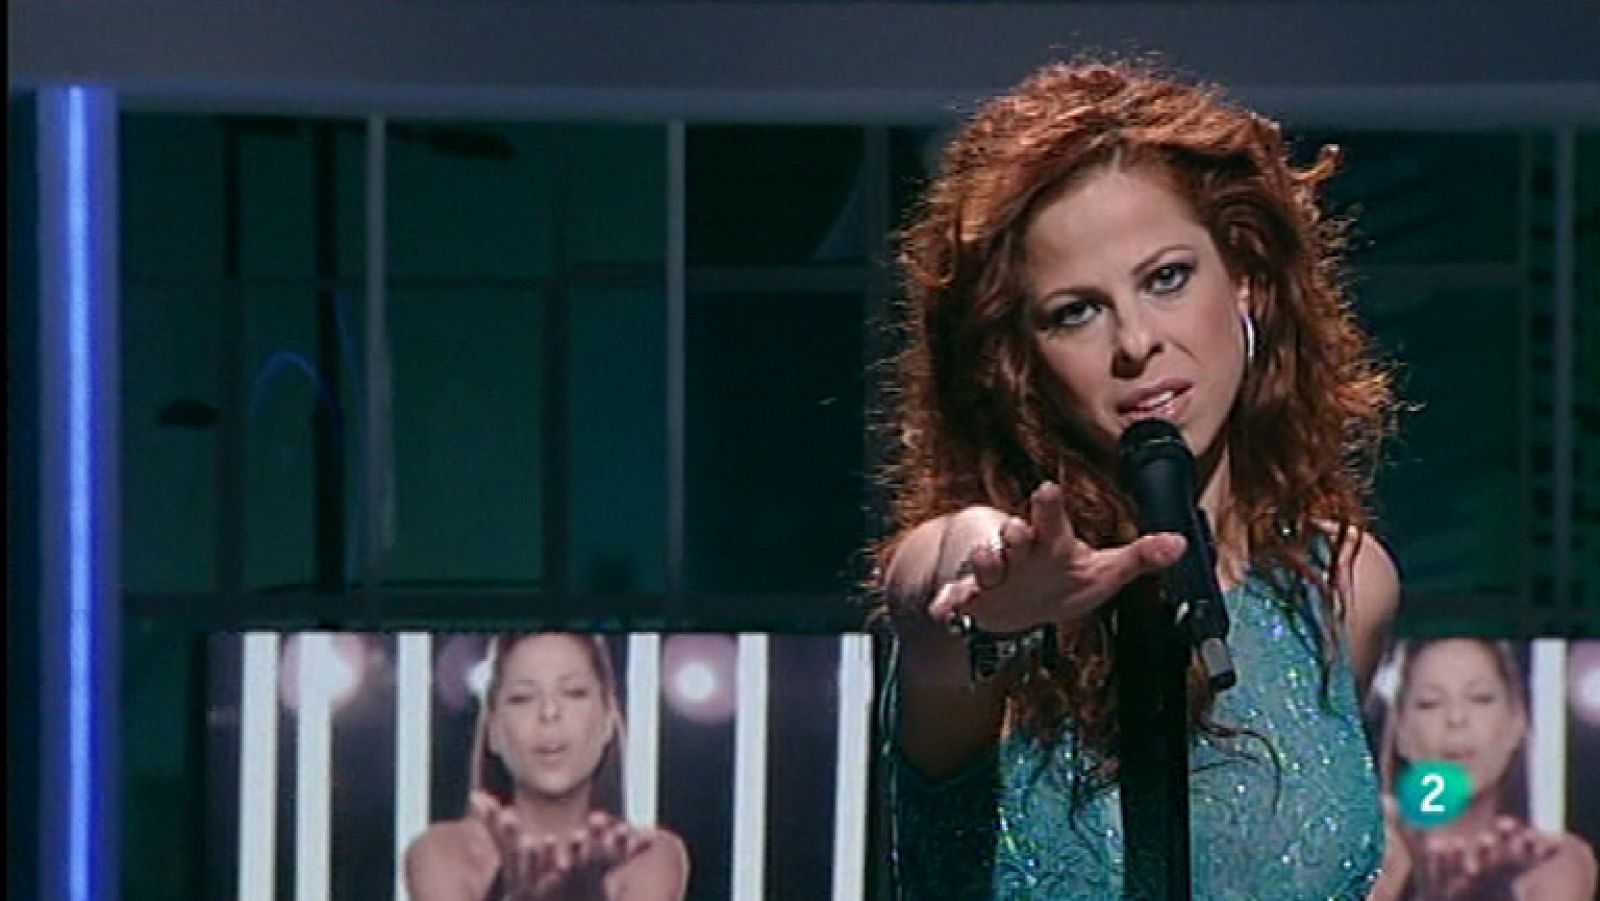 Pastora Soler visita el programa 'Para todos La 2' para cantar "Quédate conmigo", tema con el que representará a España en Eurovisión 2012 el próximo mes de mayo.